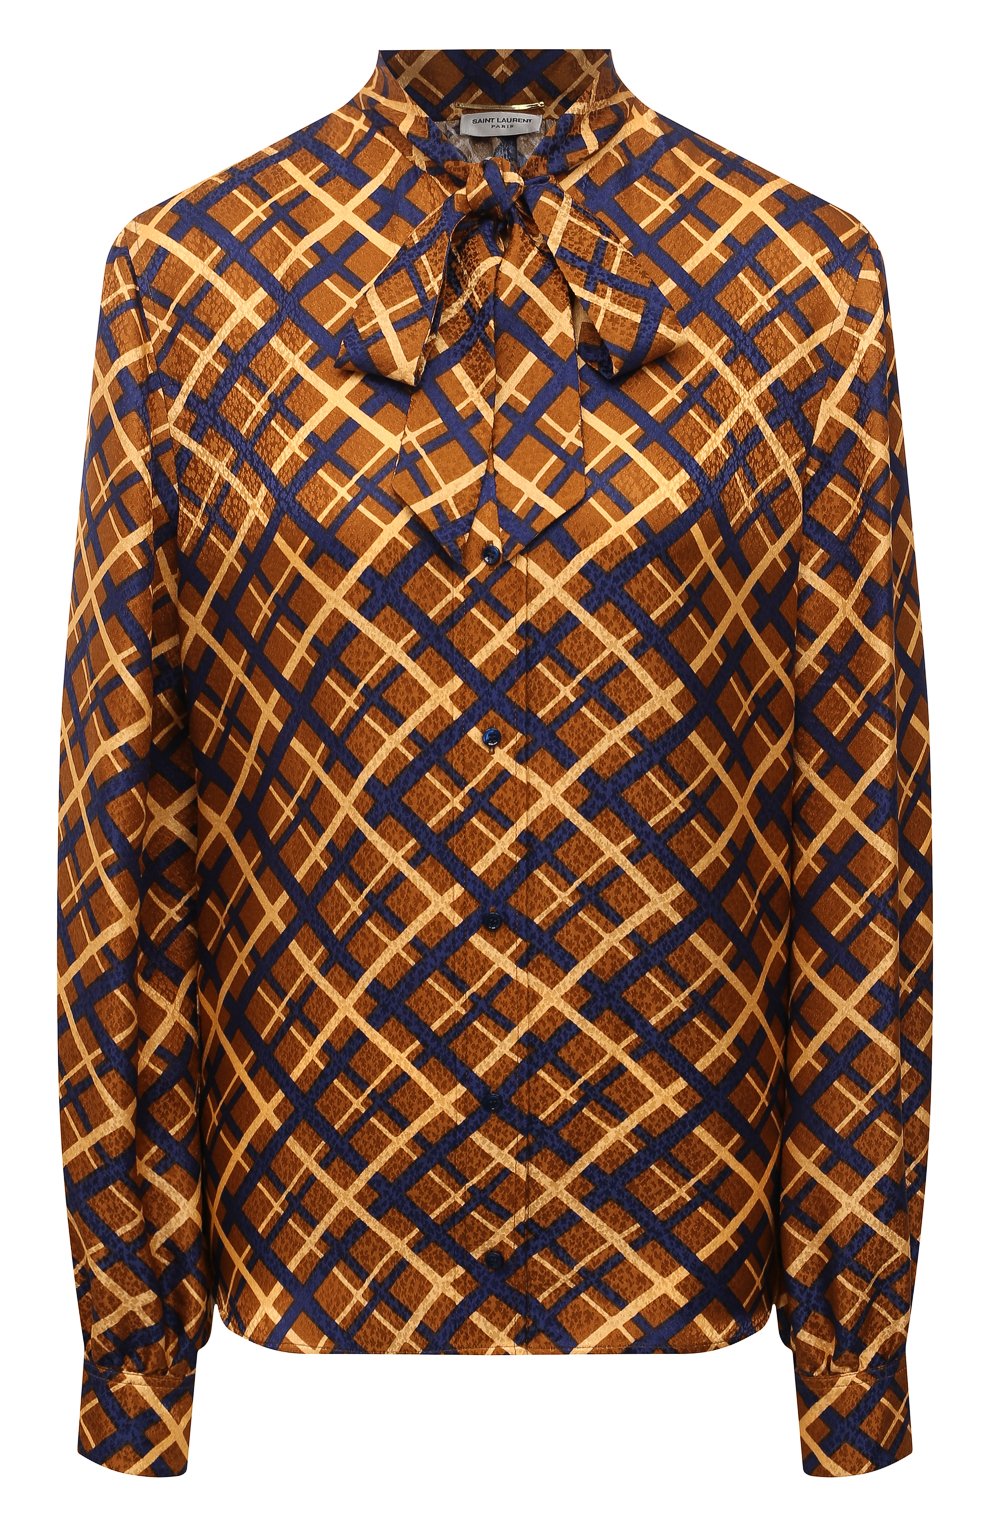 Блузы Saint Laurent, Шелковая блузка Saint Laurent, Италия, Коричневый, Шелк: 100%;, 12236347  - купить